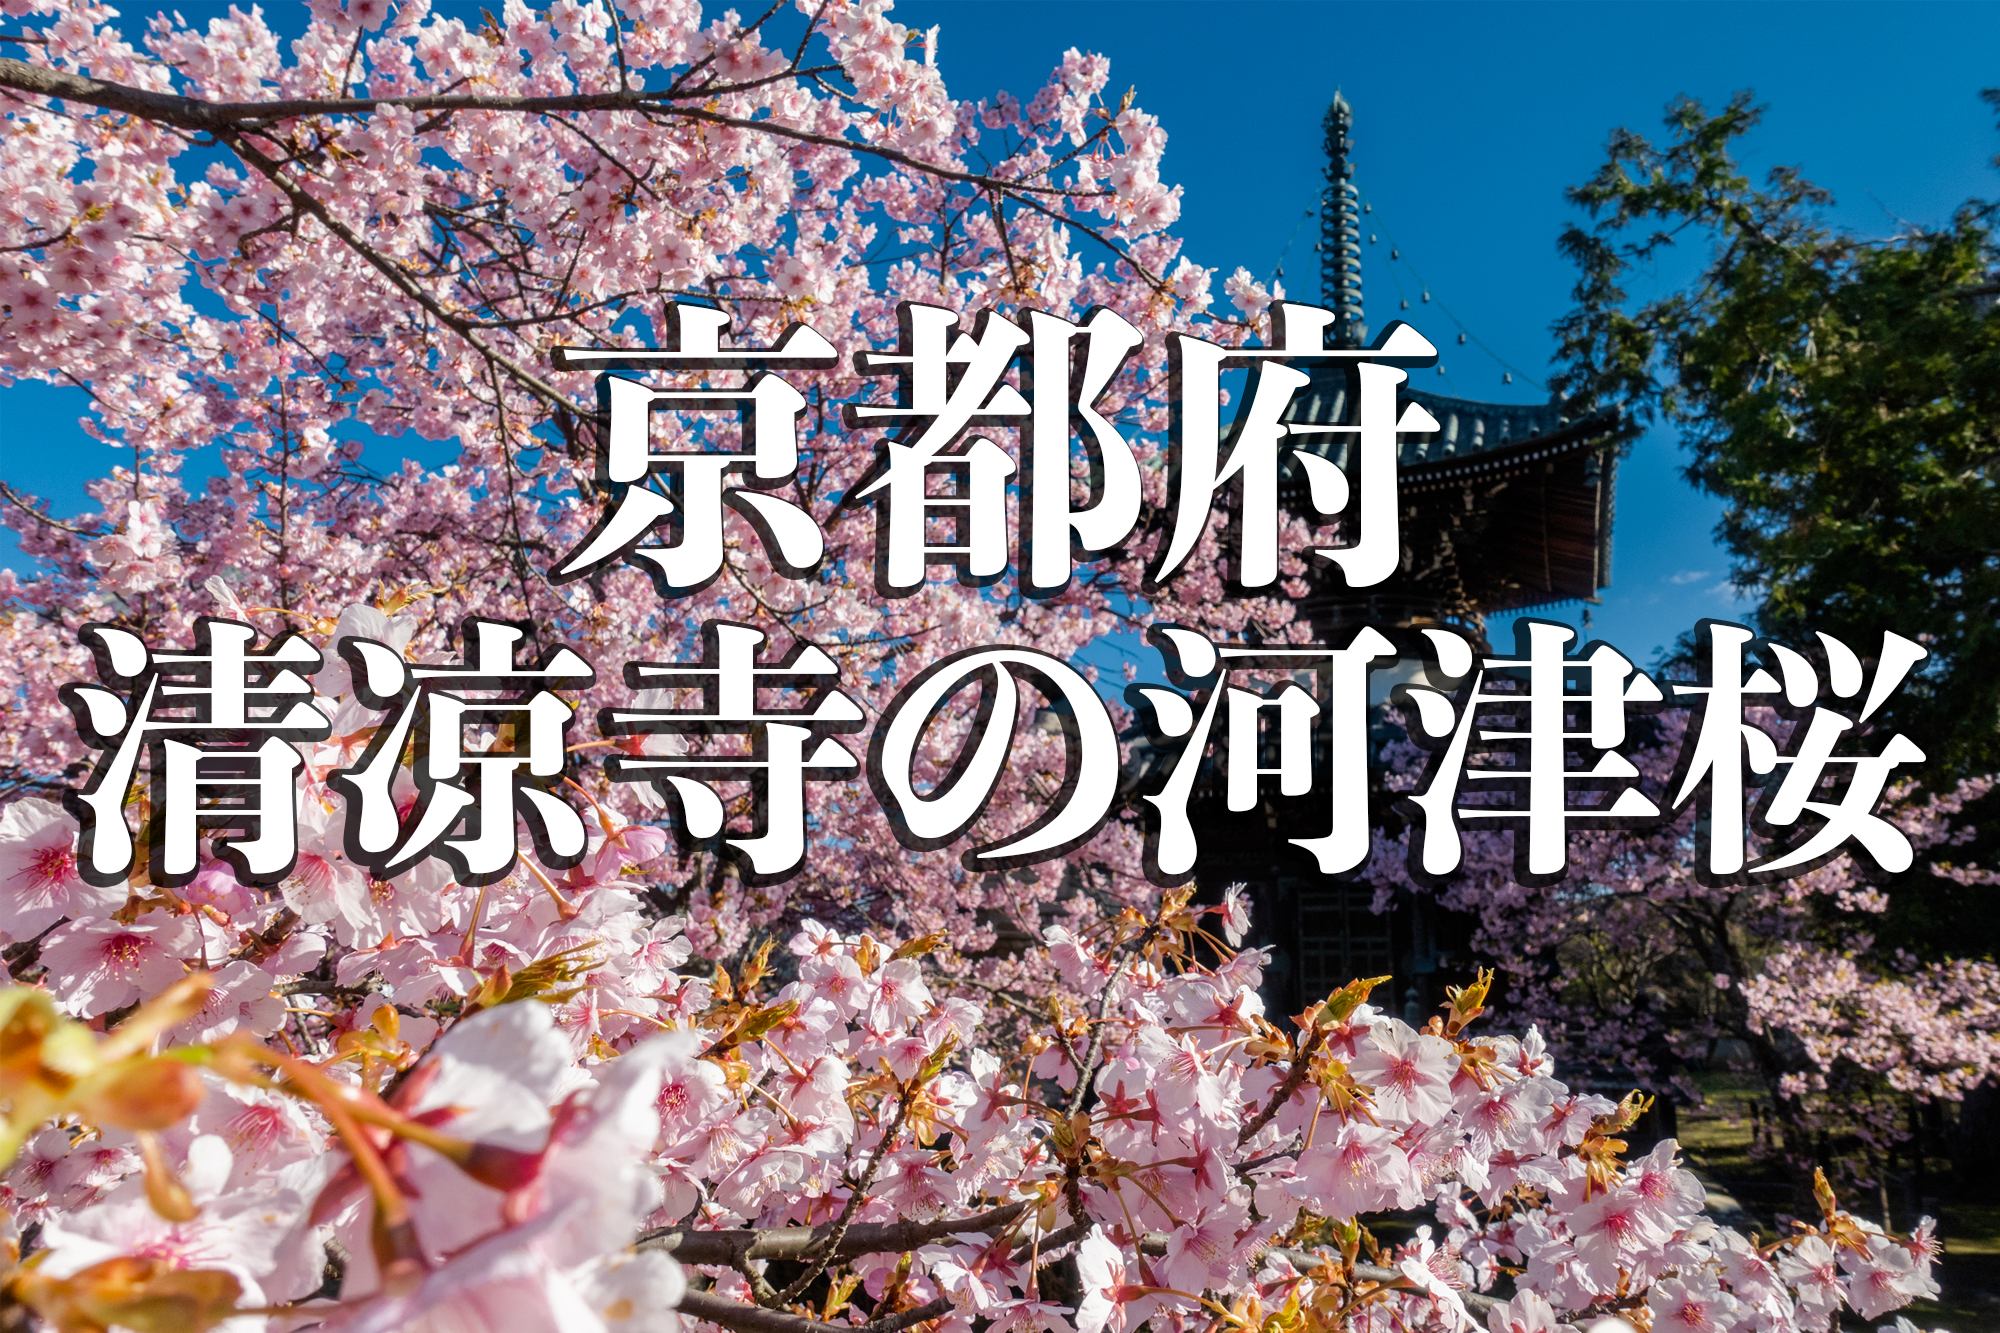 京都府 清凉寺 多宝塔と河津桜の美しい景色 京都の春におすすめ桜写真スポット 写真の紹介 アクセス方法や駐車場など 写真や映像で紹介する関西 近畿の絶景カメラ 観光スポット